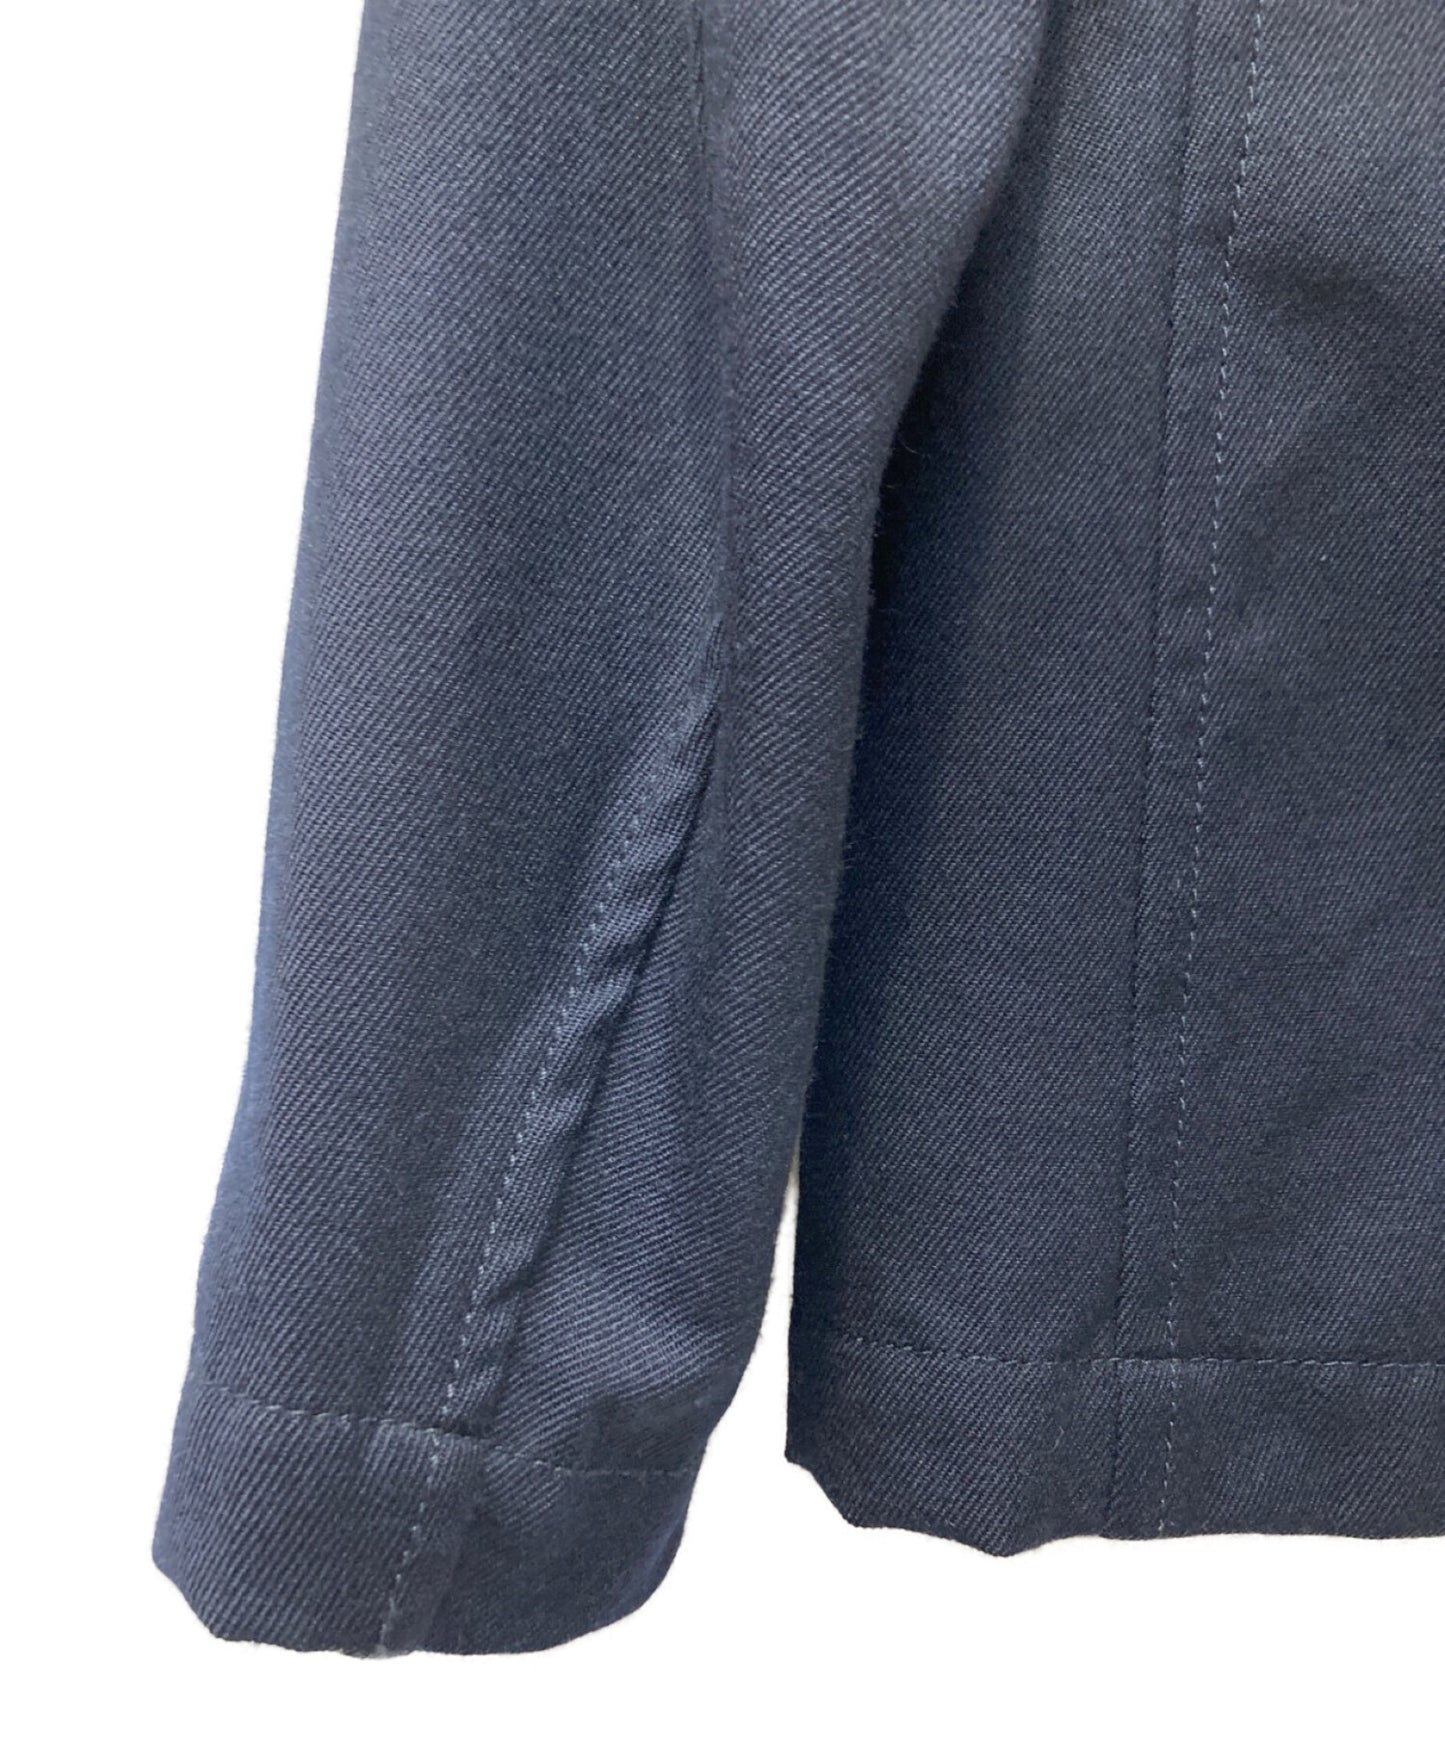 COMME DES GARCONS襯衫產品洗淨的肋羊毛夾克W25166